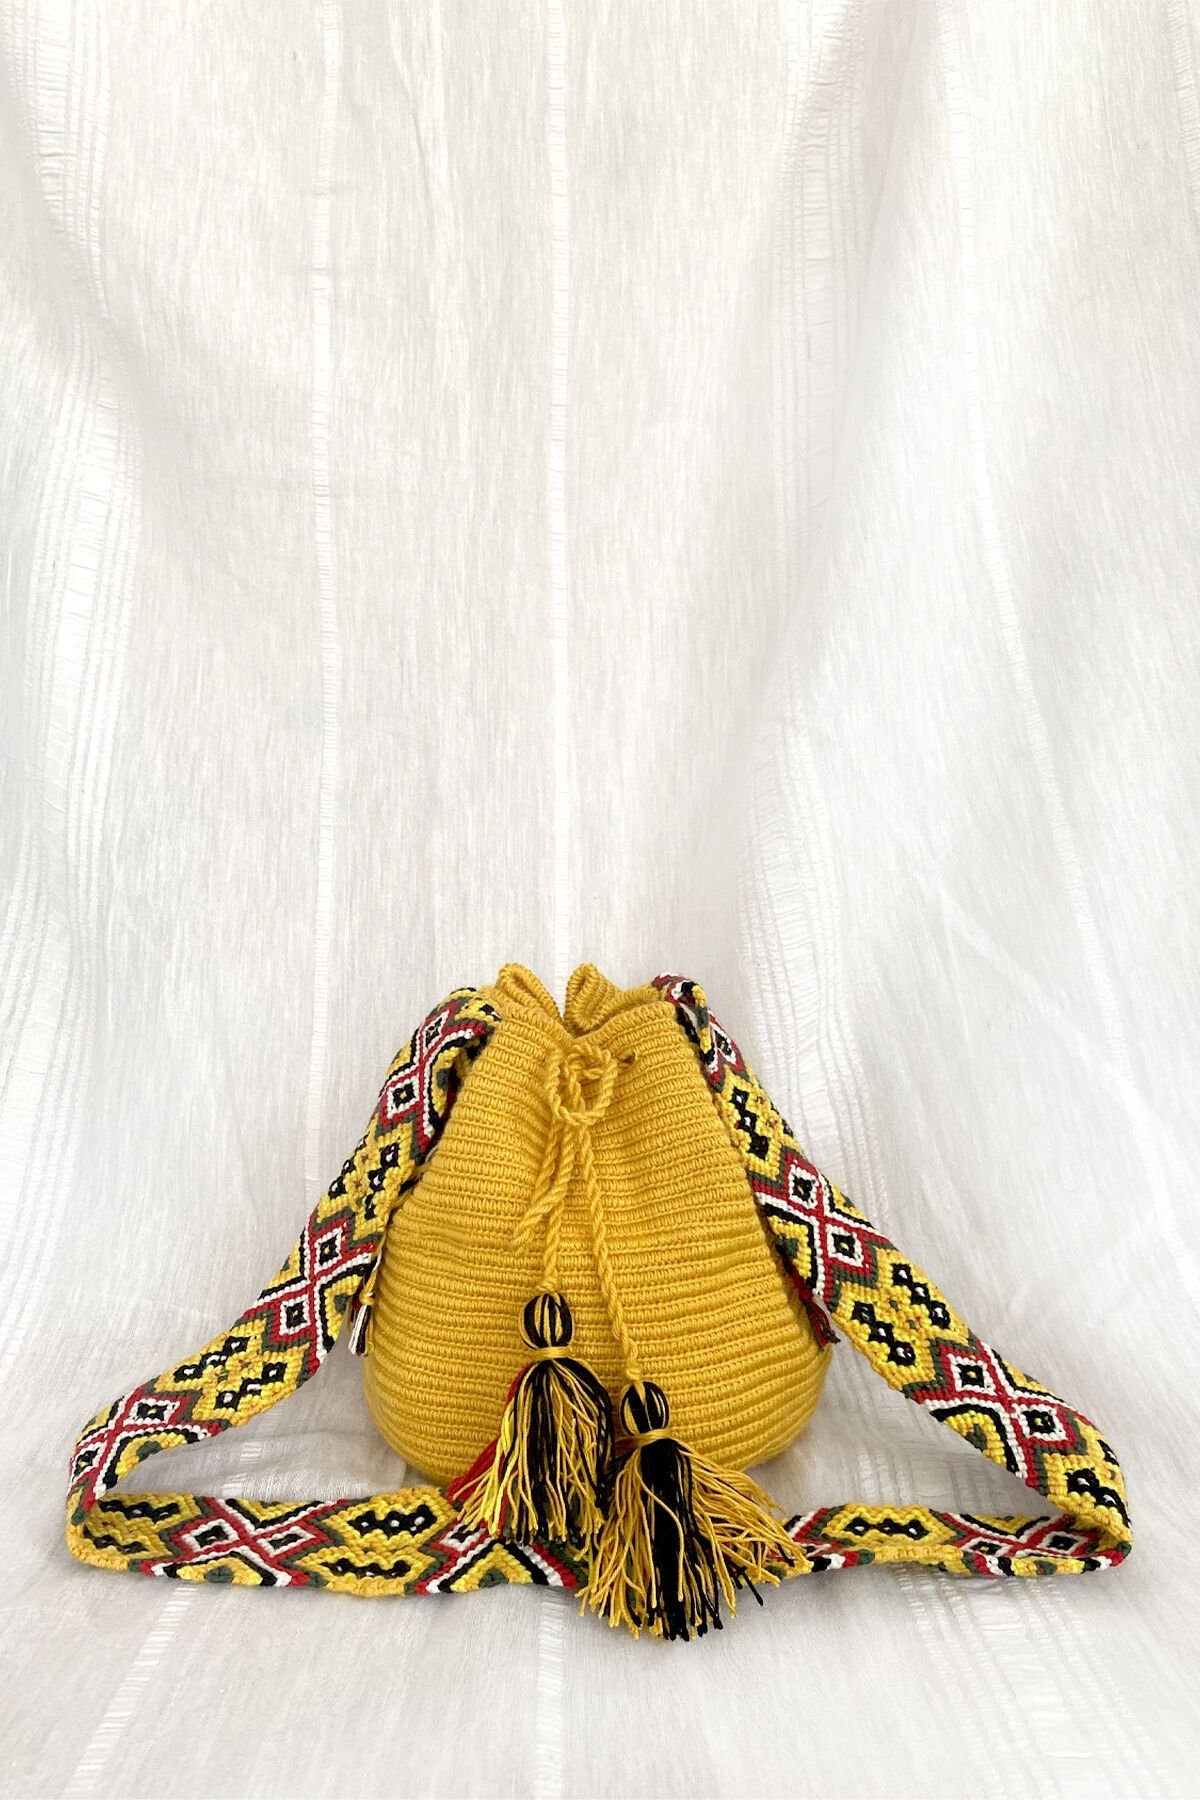 Mini Tatlı Sarı Wayuu Mochila Çanta, Kol Çantası